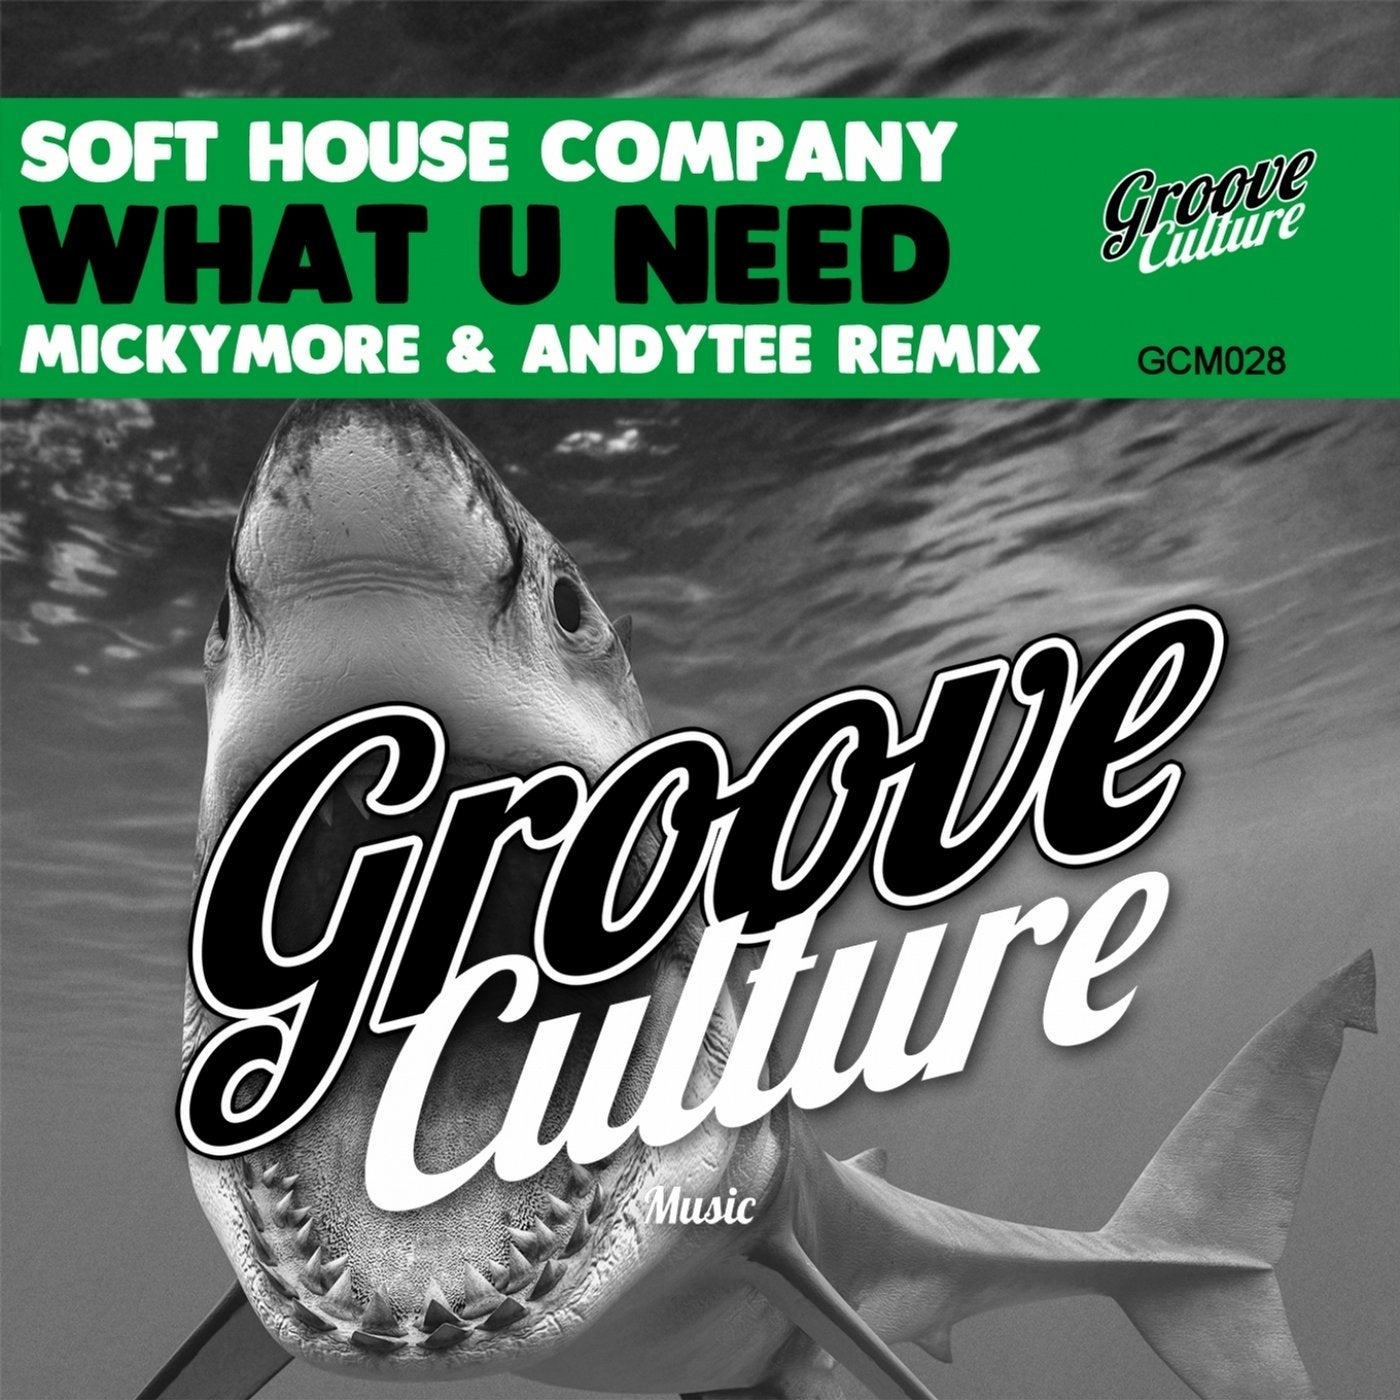 Софт Хаус. Groove Culture. Микки море, Andy Tee. Альбом Micky more & Andy Tee: the collection.